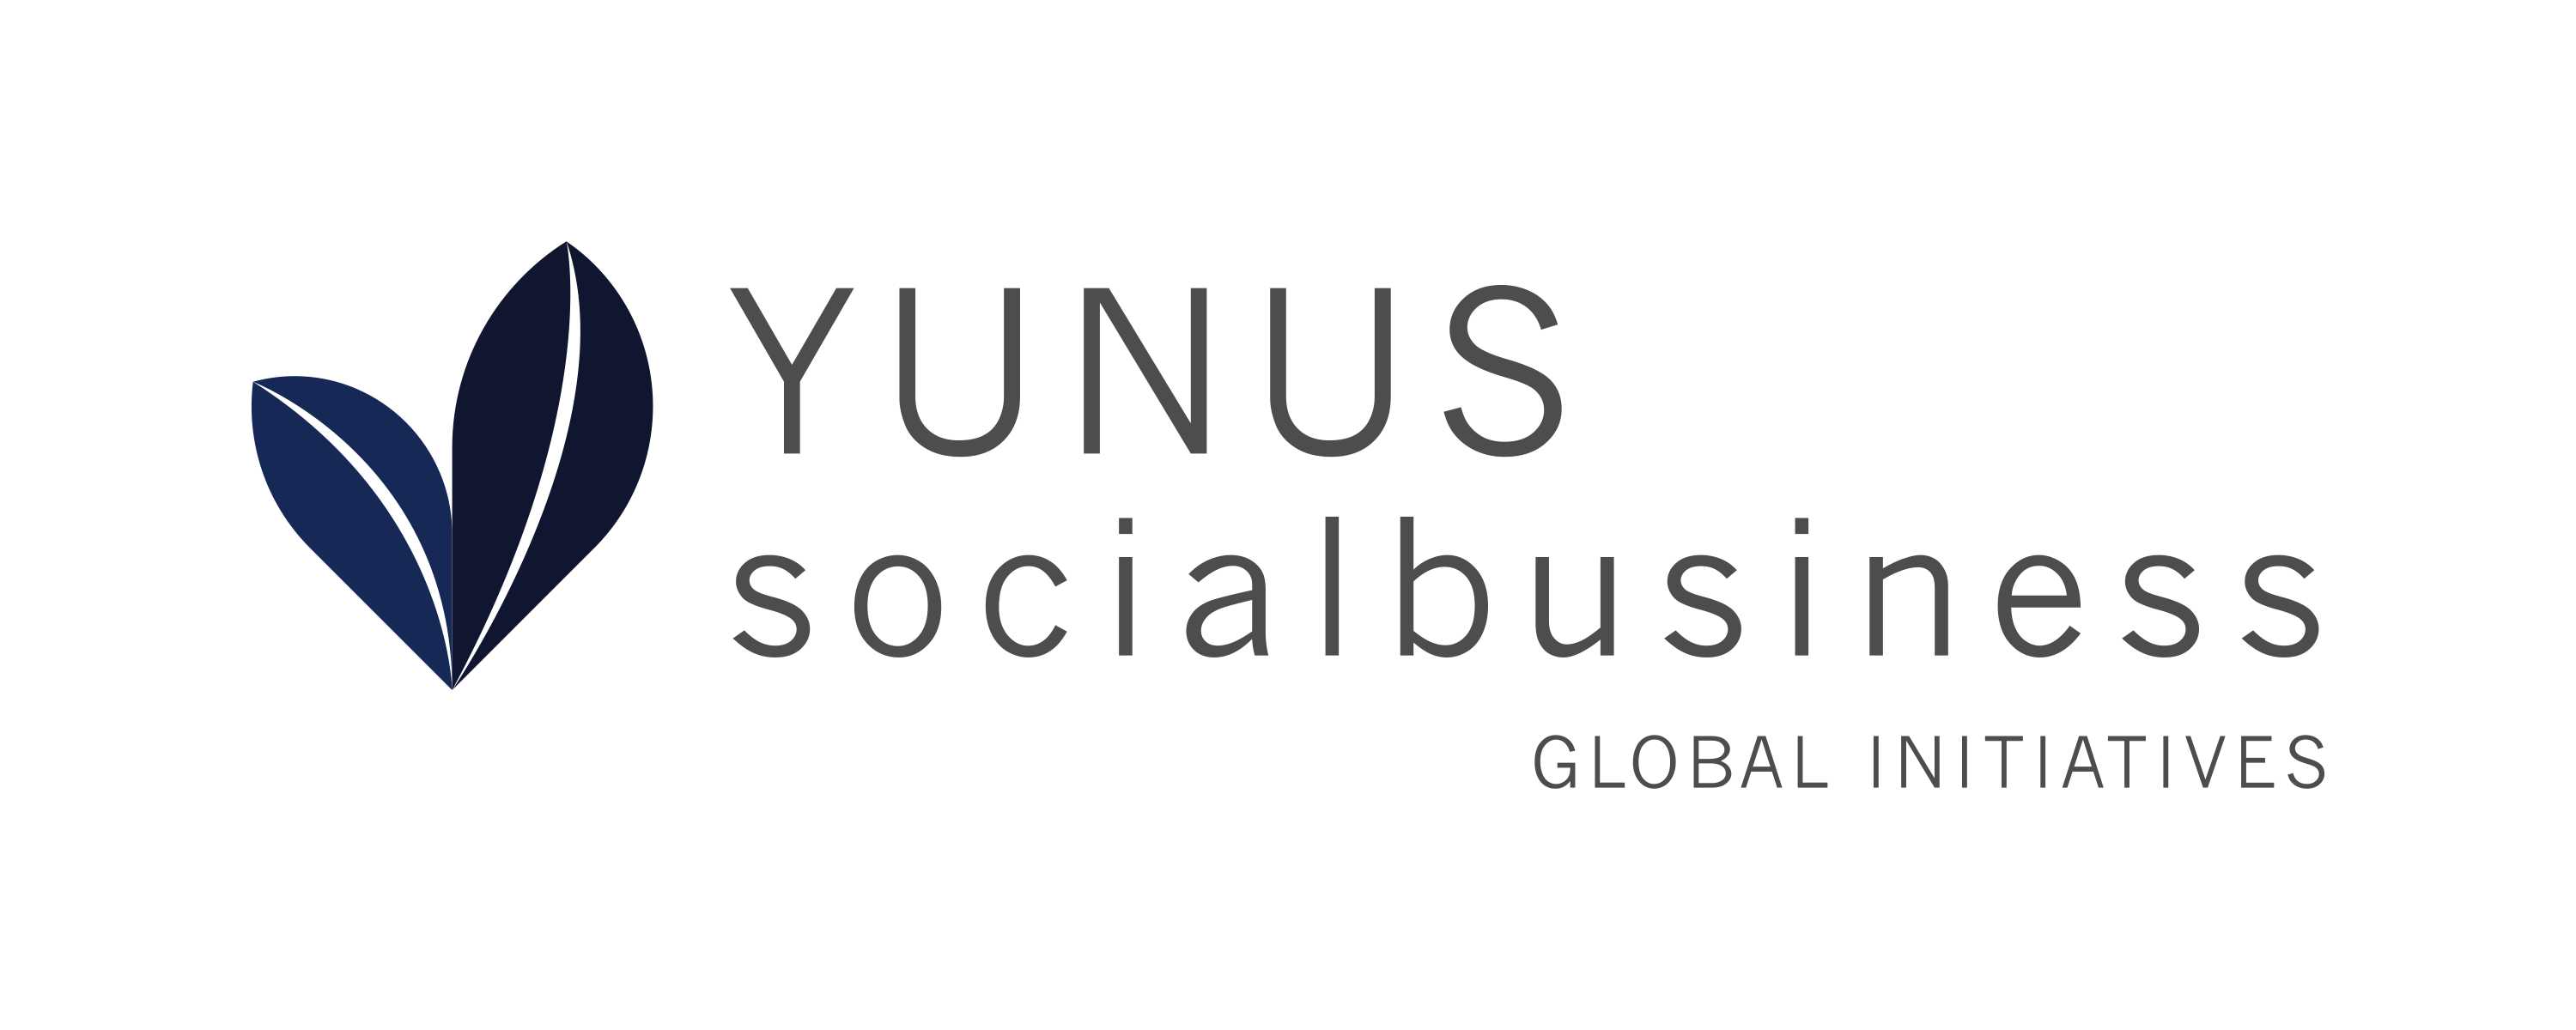 Yunus Social Business - Global Initiatives